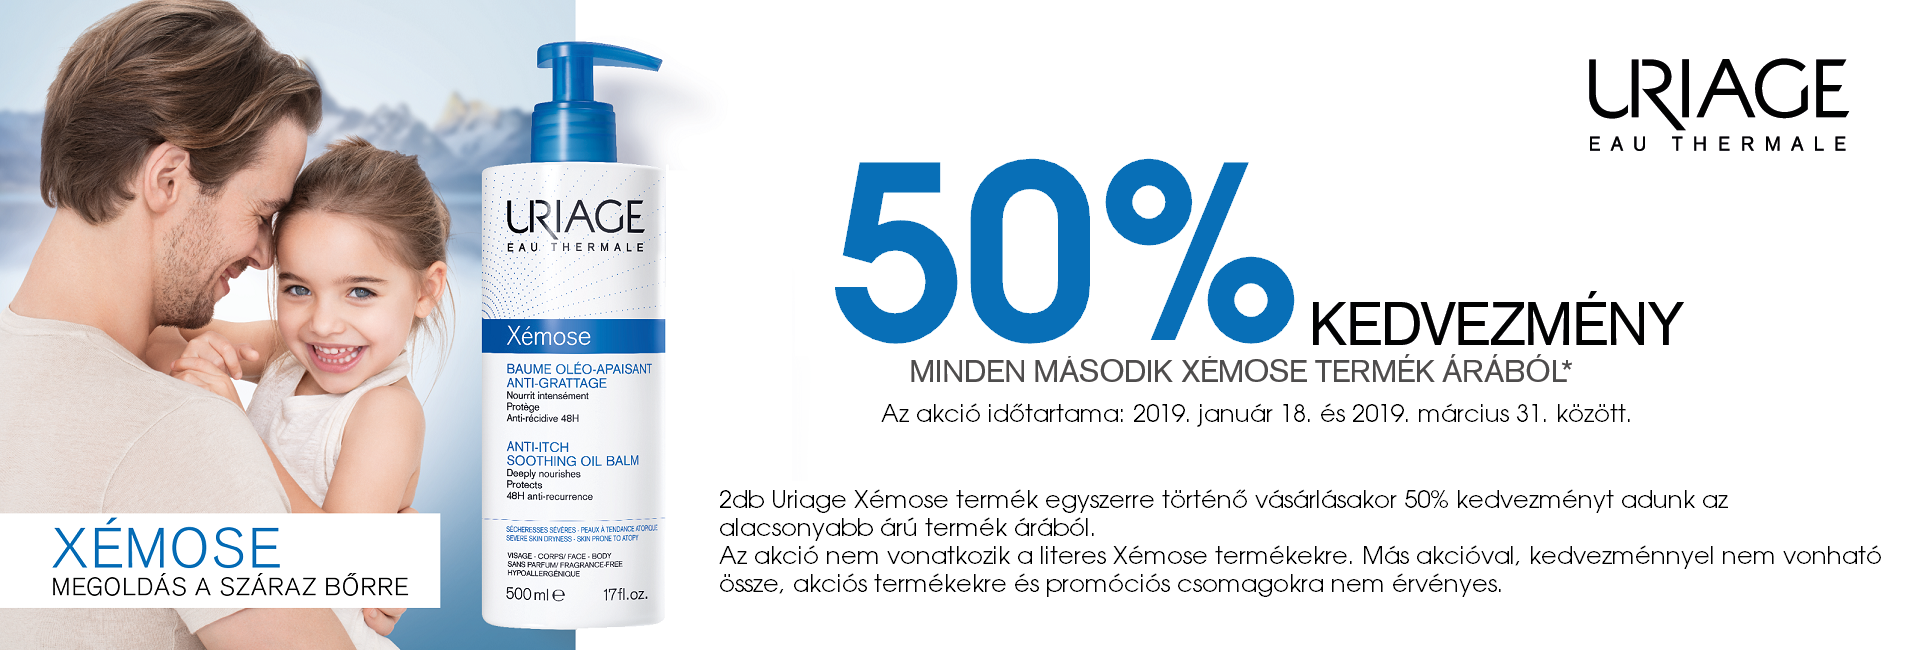 2019. március 31-ig a második Uriage Xémose termékre 50% kedvezményt adunk!